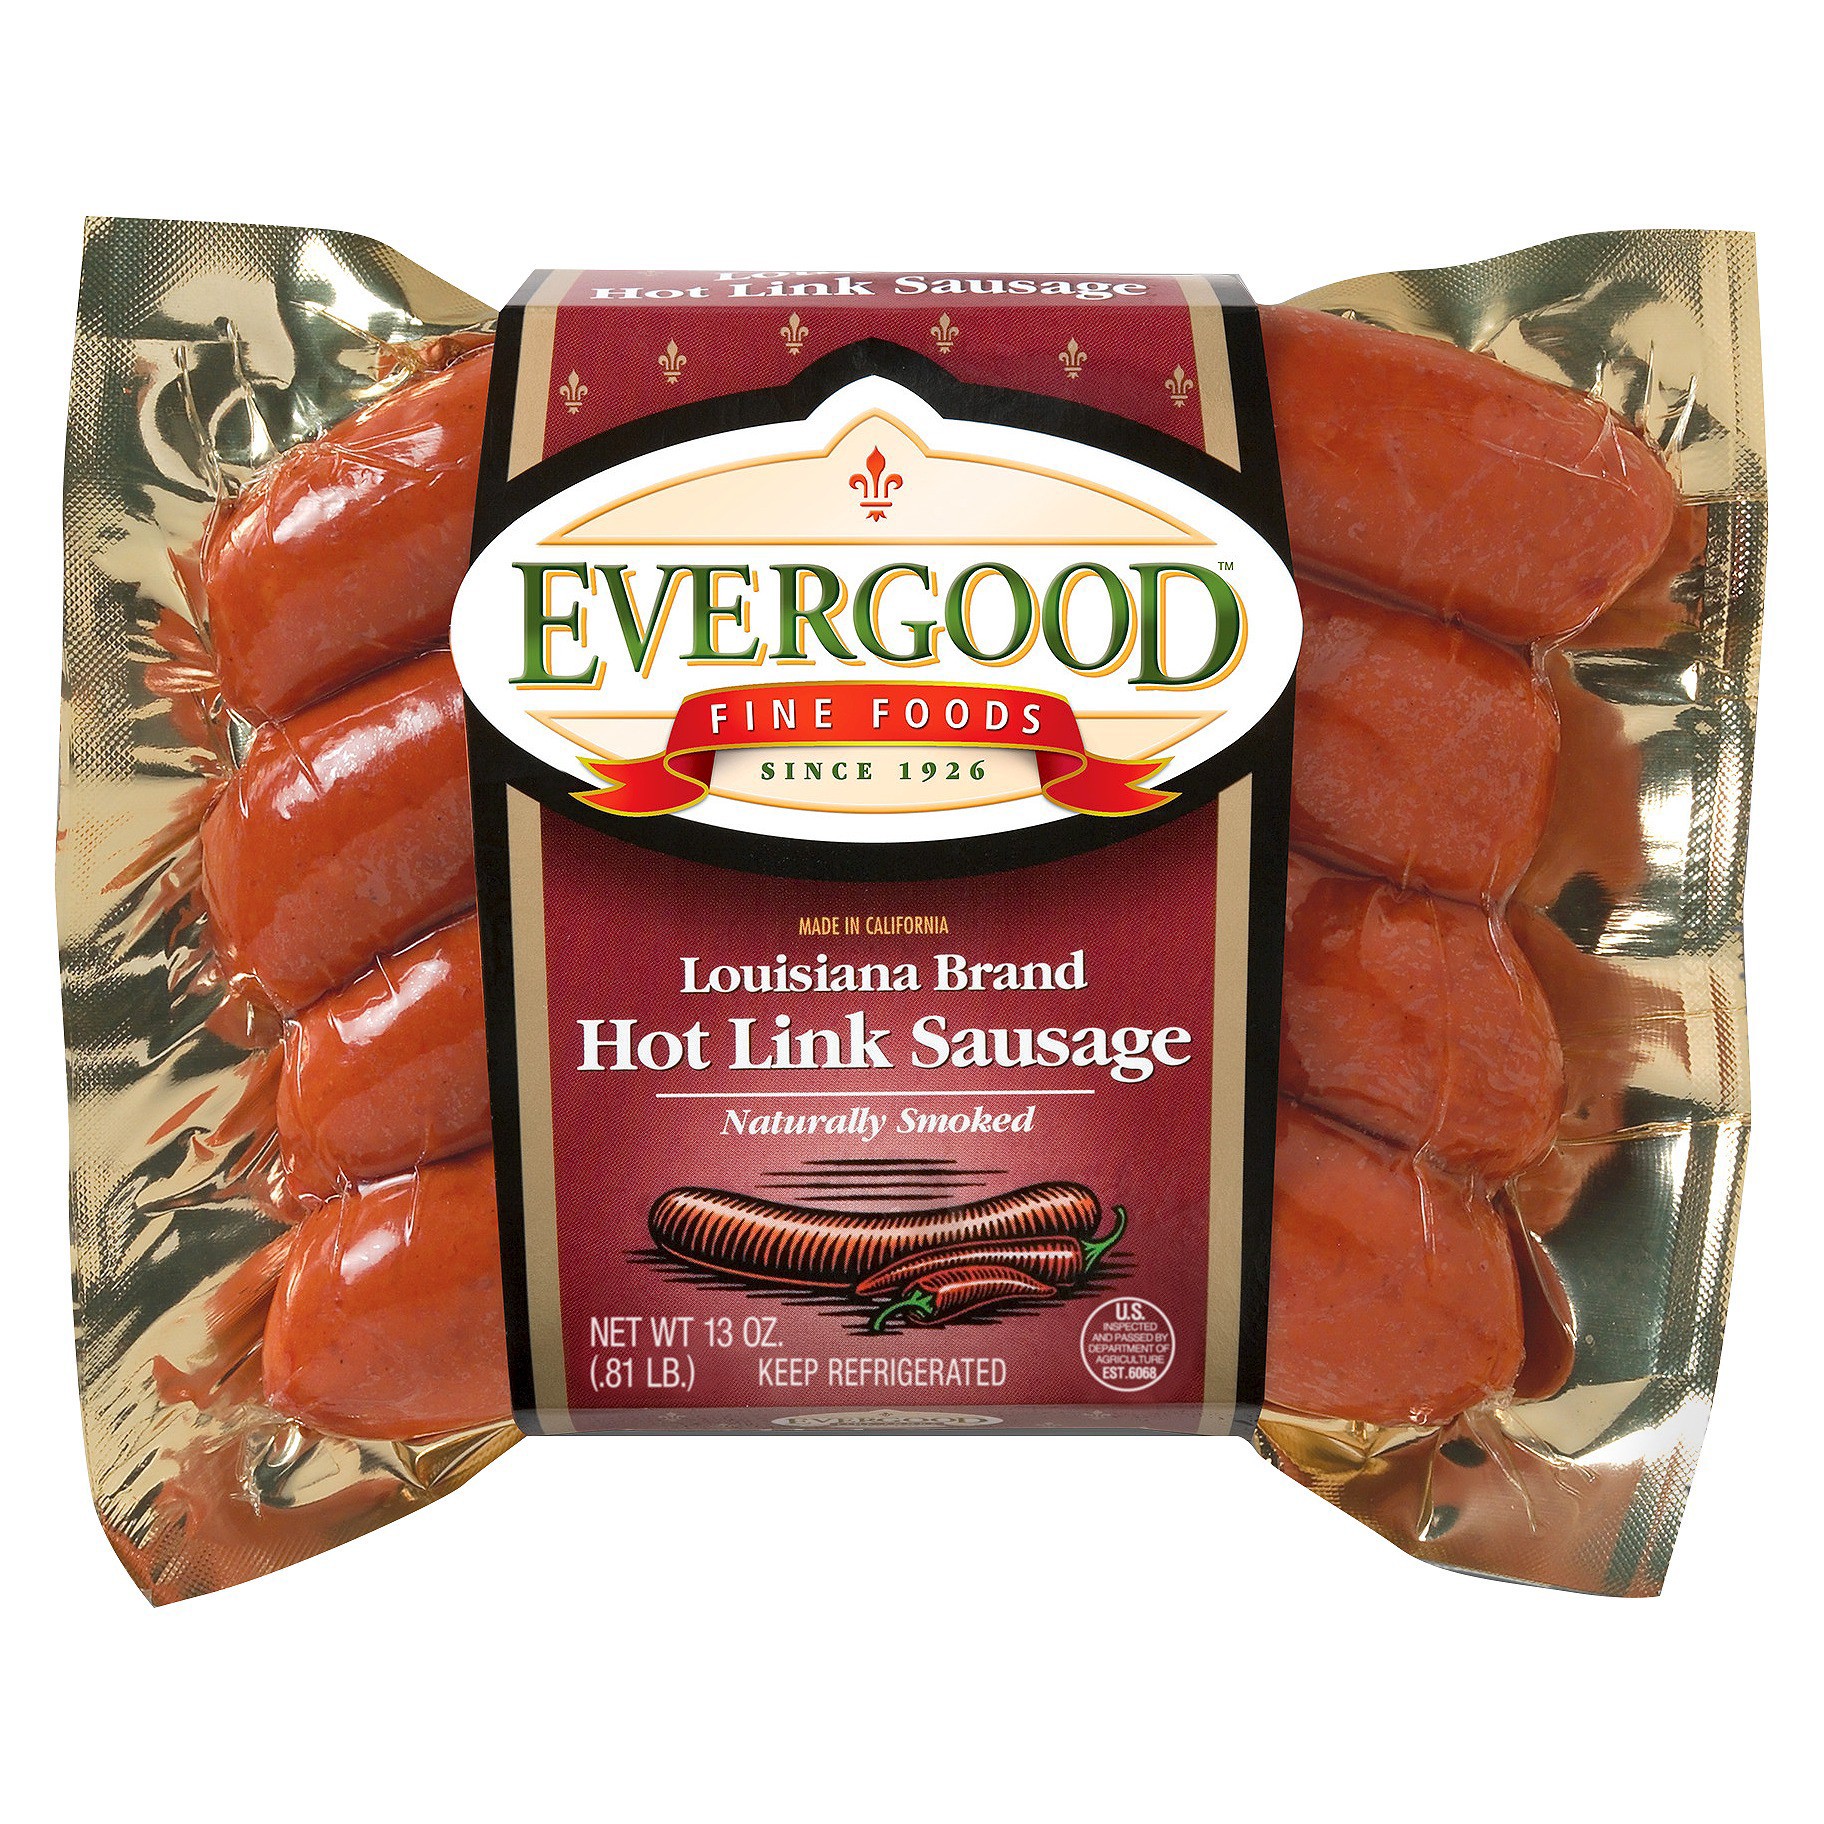 Costco Sale Item Review Taste Test Evergood Fine Foods Louisiana